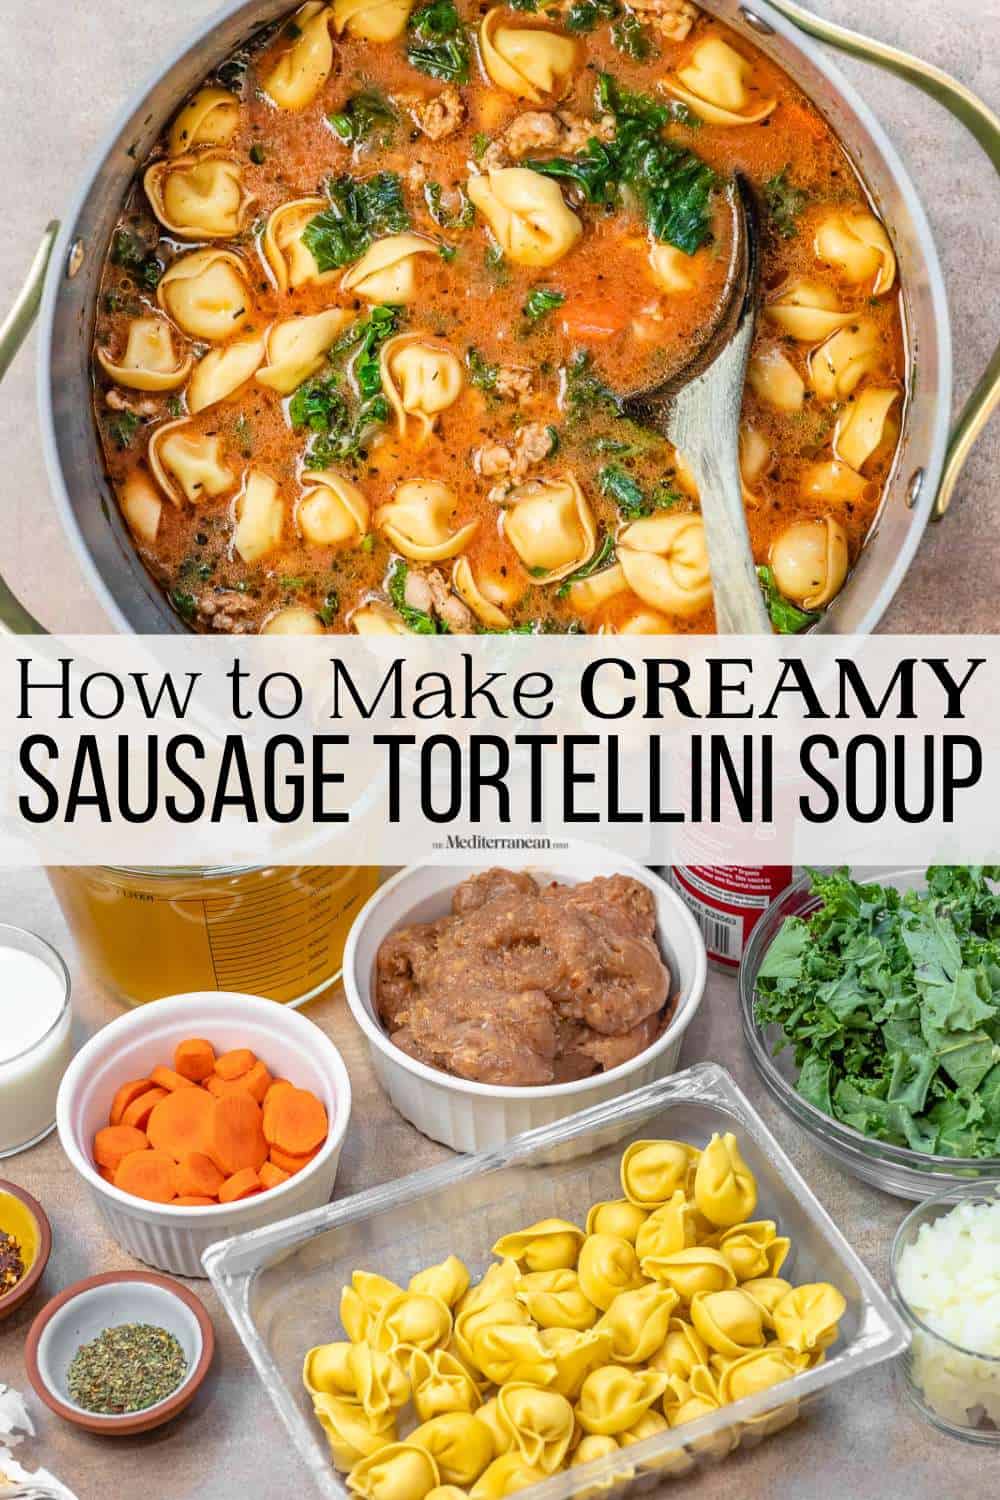 épinglez l’image 3 pour la soupe aux tortellinis.